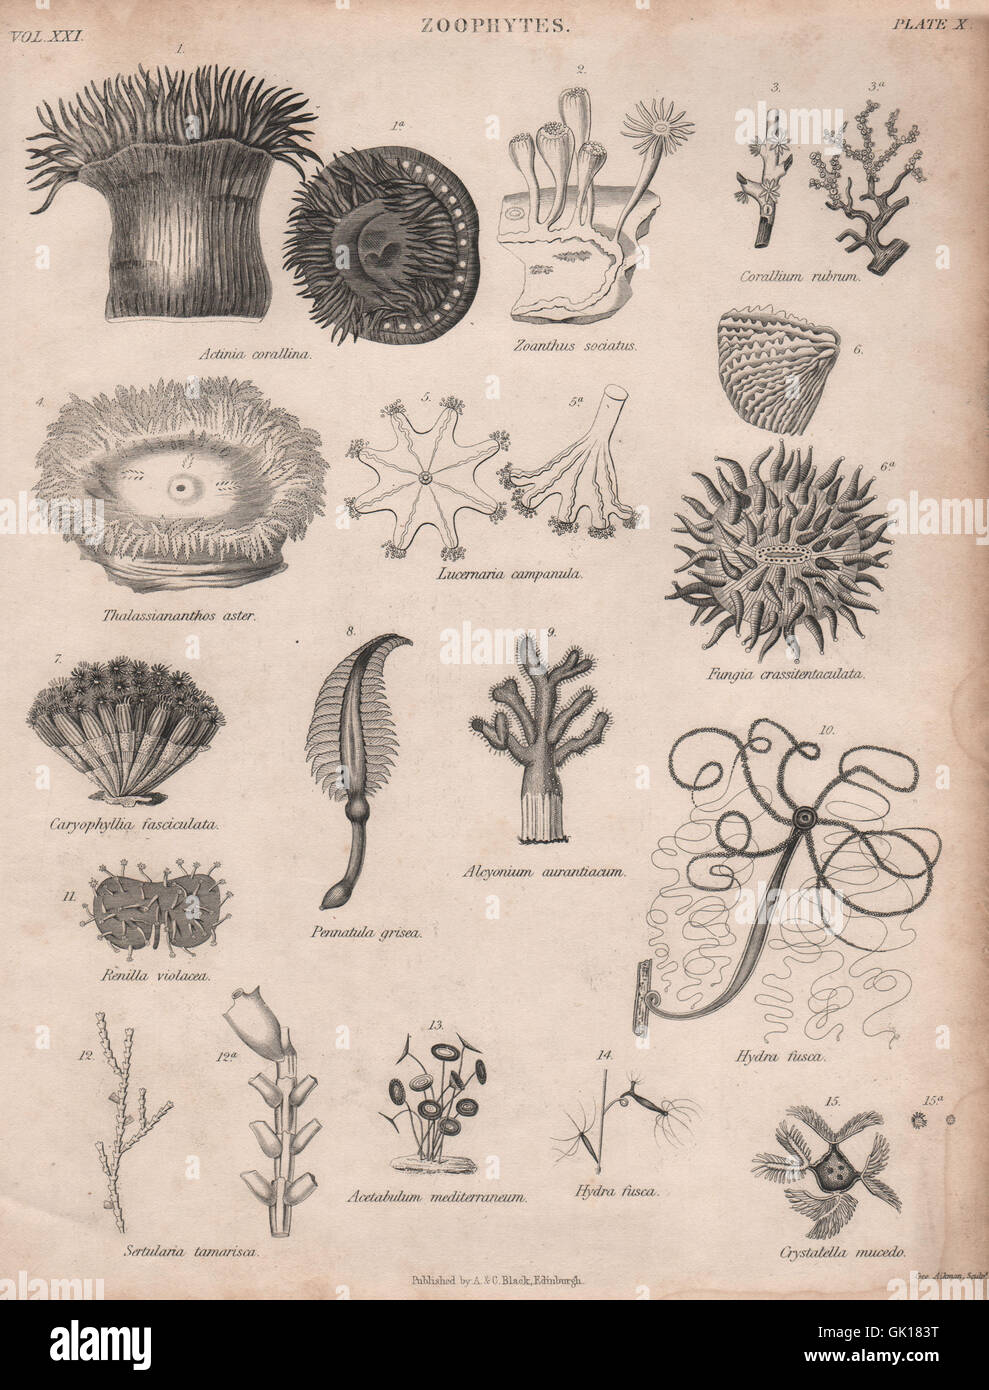 Zoophytes. Actinia corallina. Zoanthus sociatus. Corallium rubrum, print 1860 Stock Photo